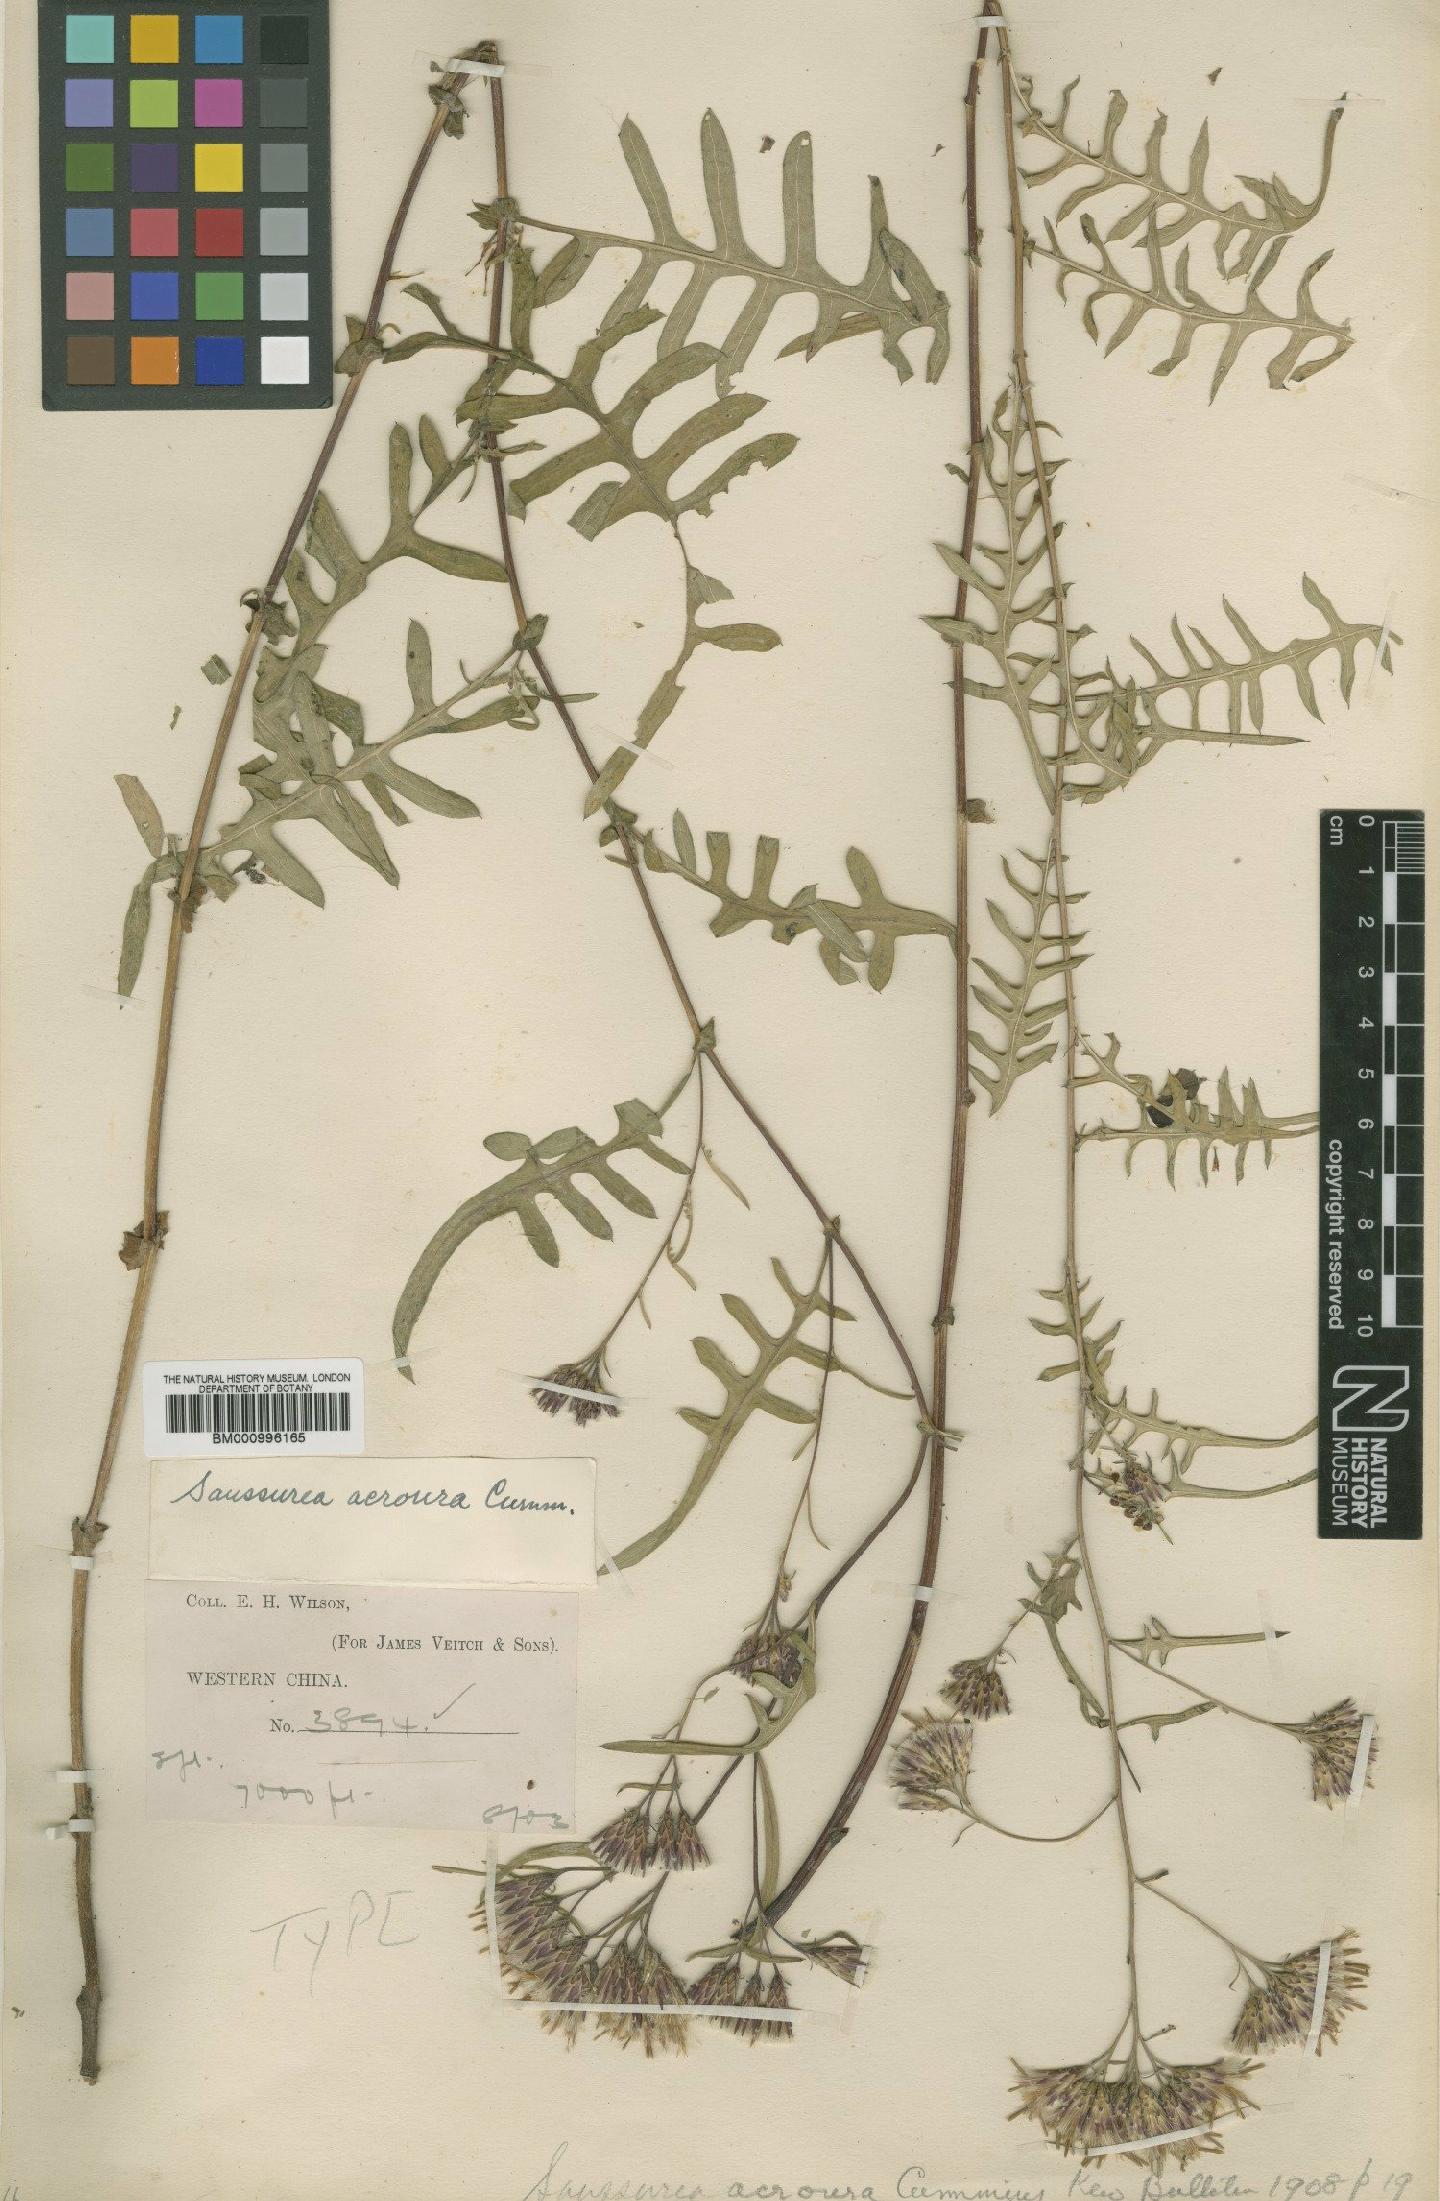 To NHMUK collection (Saussurea acroura Cummins; Type; NHMUK:ecatalogue:479641)